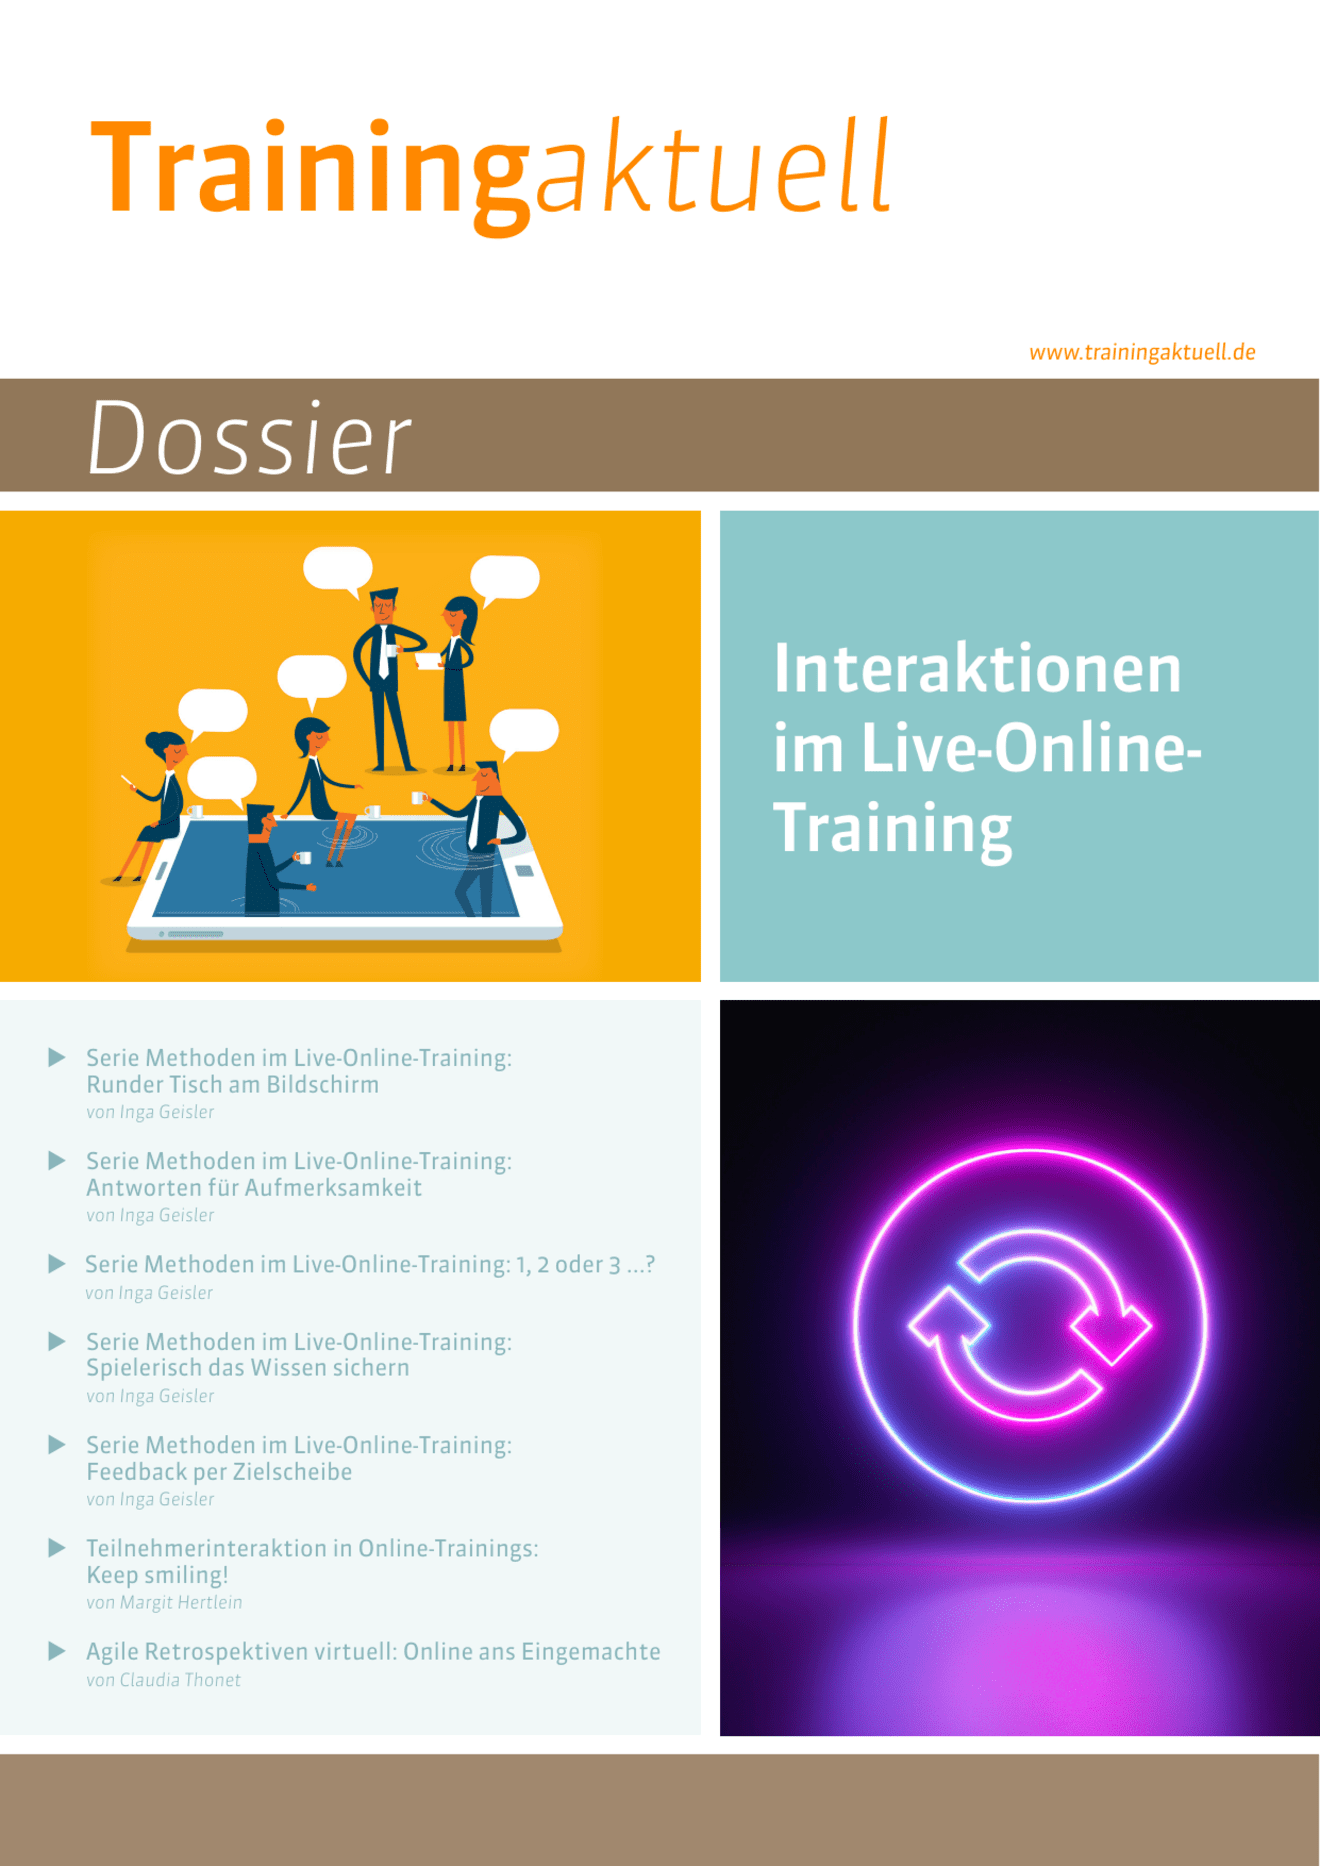 zum Dossier: Interaktionen im Live-Online-Training